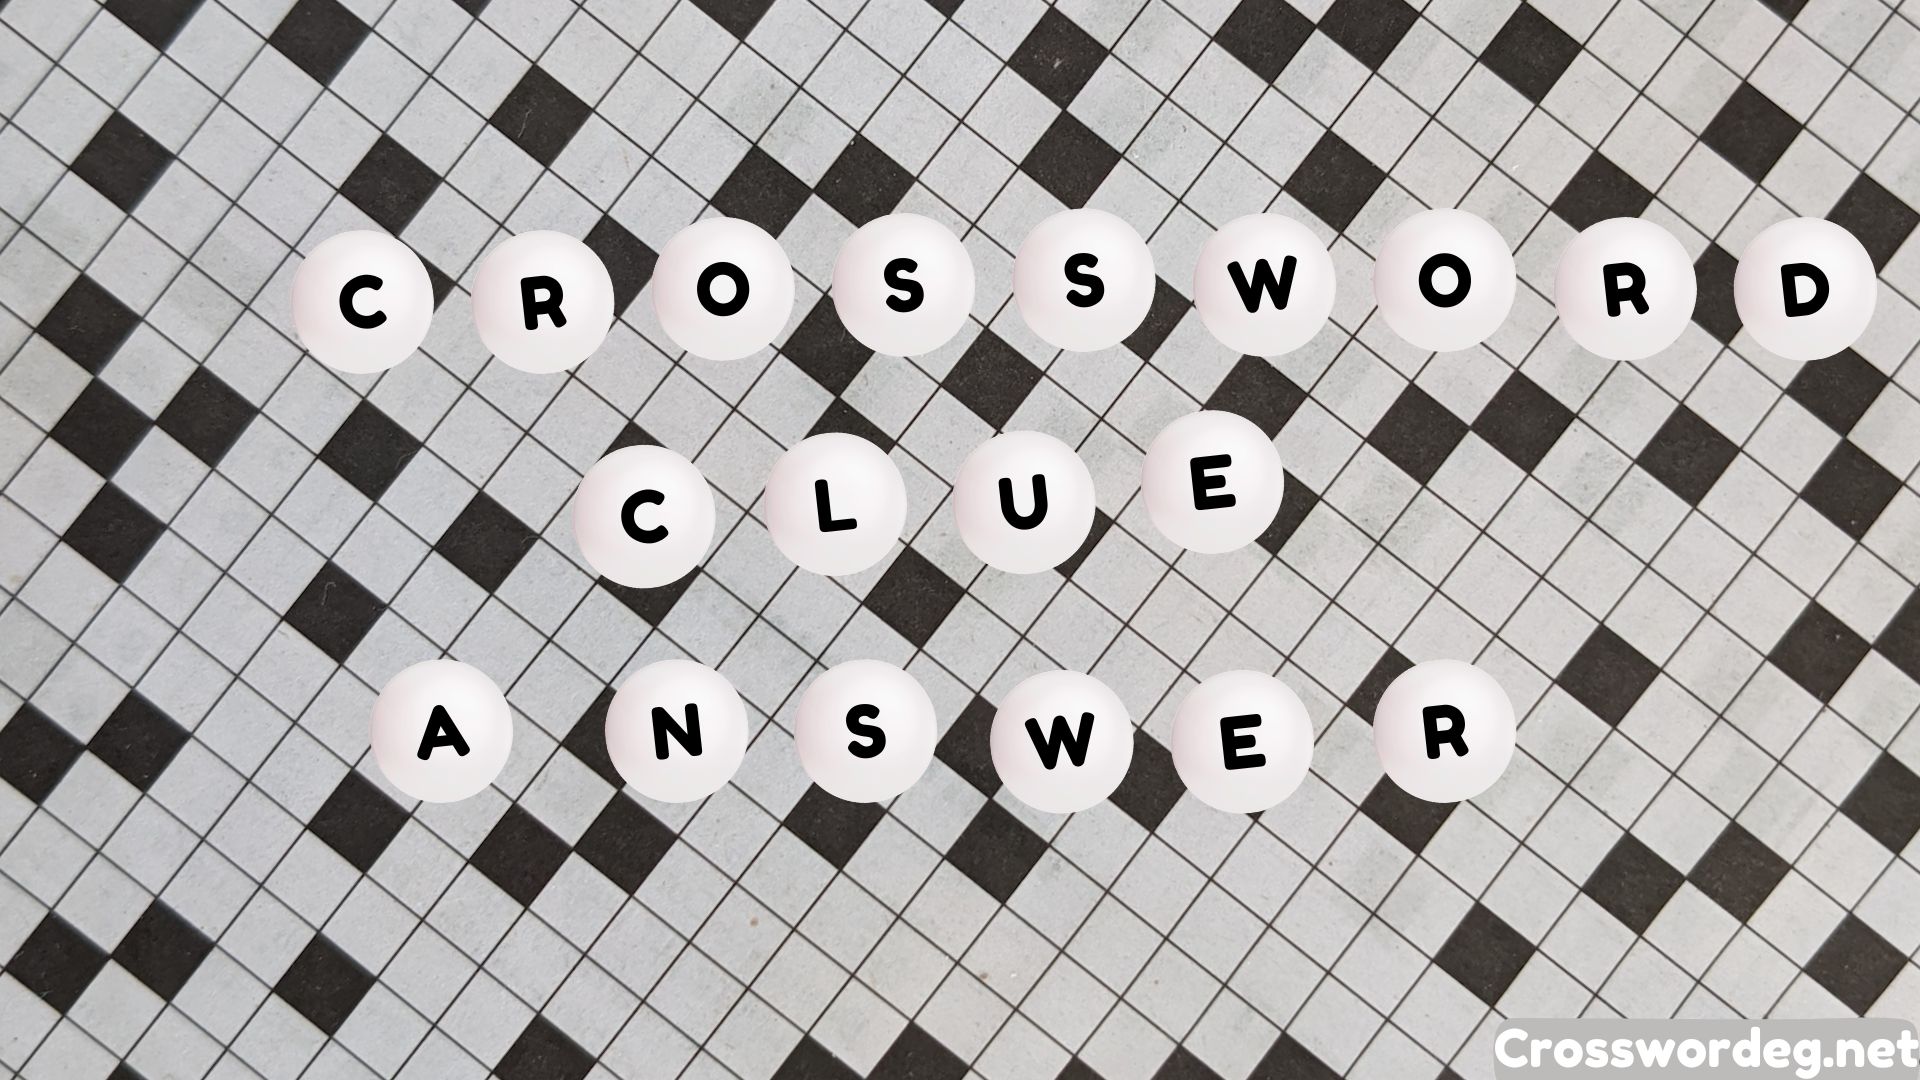 Degrade oneself by Crossword Clue Answers Crosswordeg net